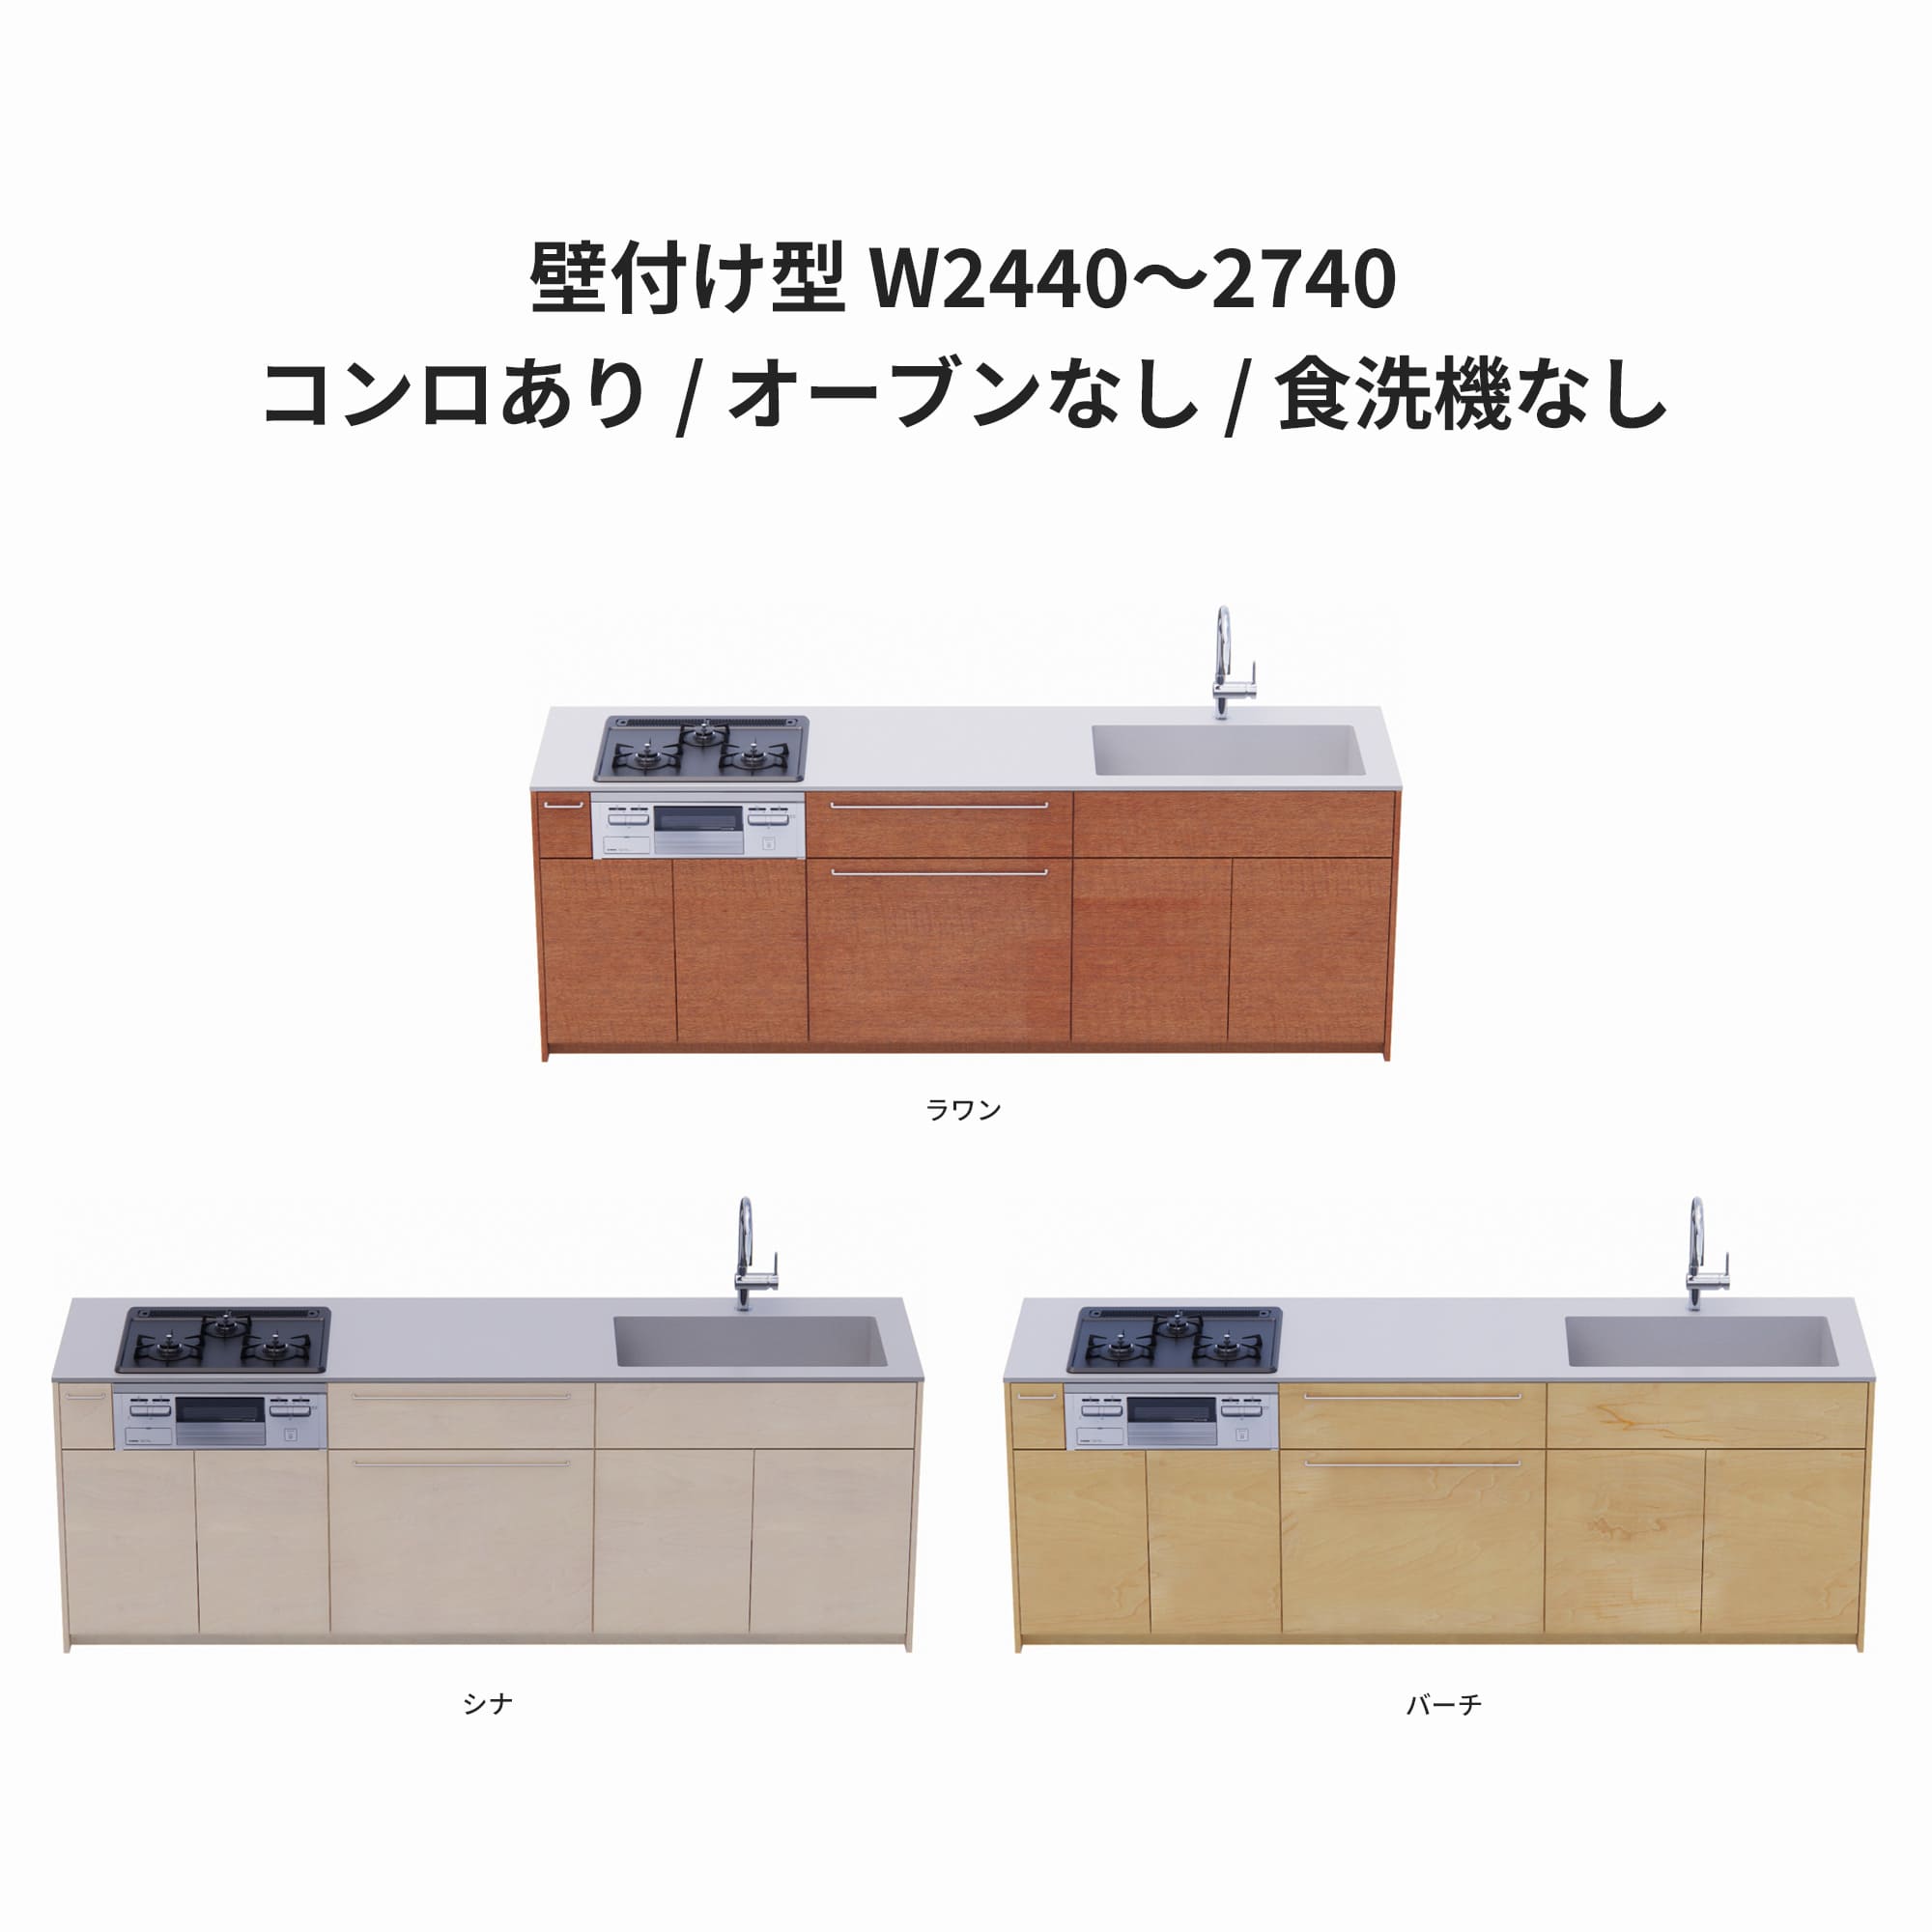 木製システムキッチン 壁付け型 W2440～2740・コンロあり / オーブンなし / 食洗機なし KB-KC022-23-G183 ラワン・シナ・バーチが選択できます